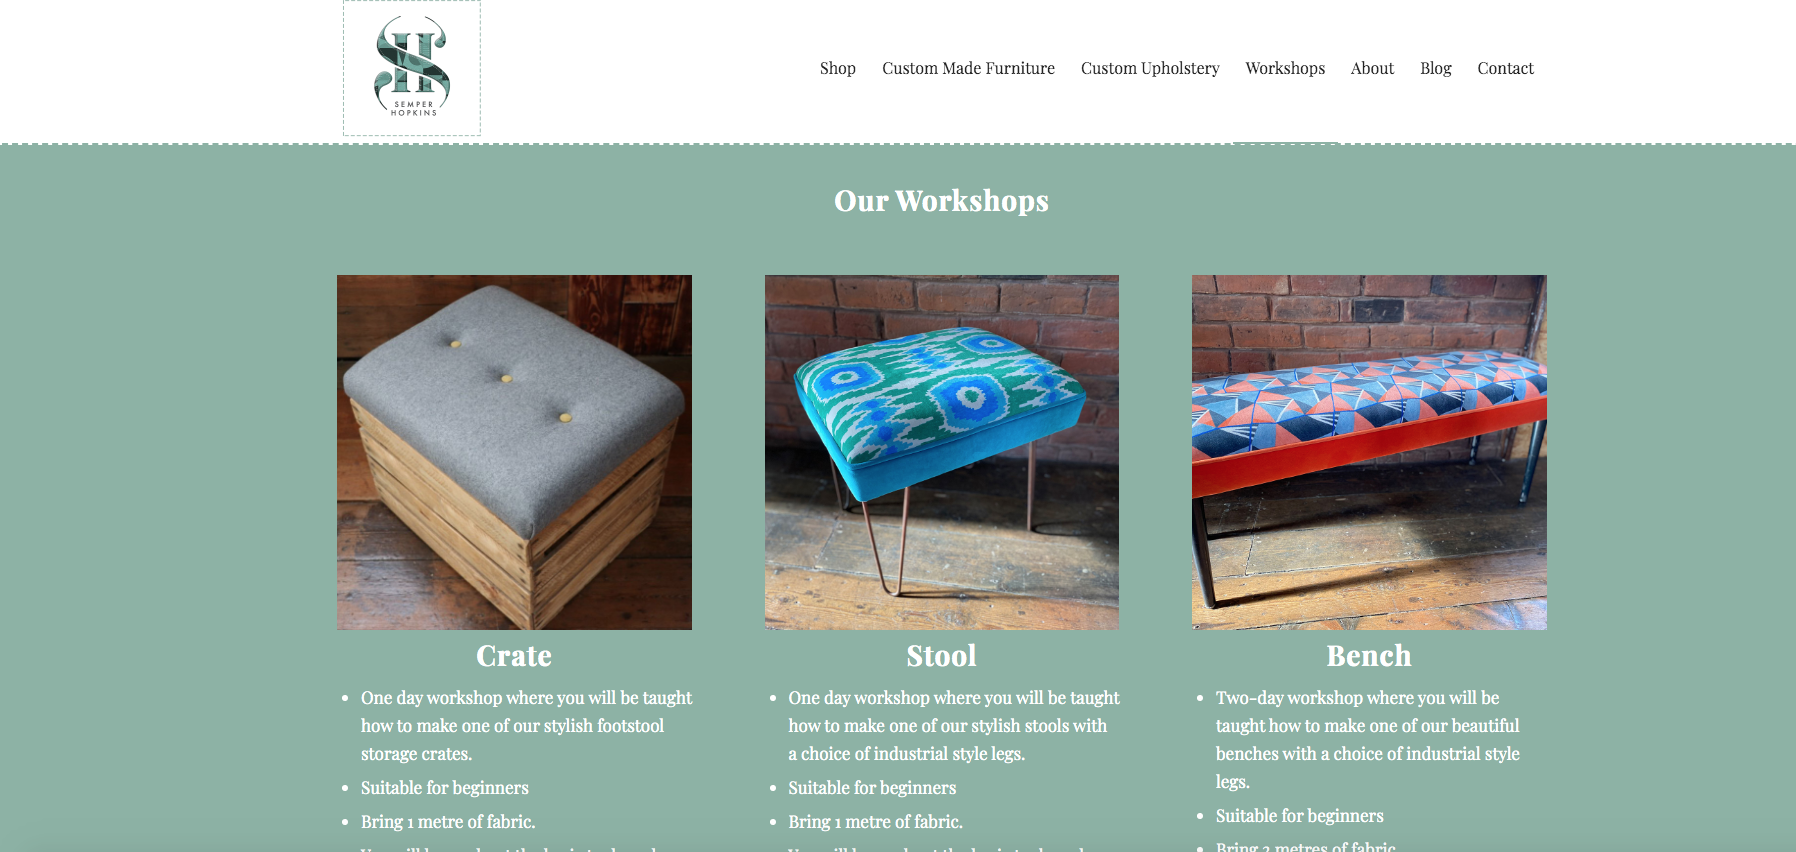 Upholstery Workshops